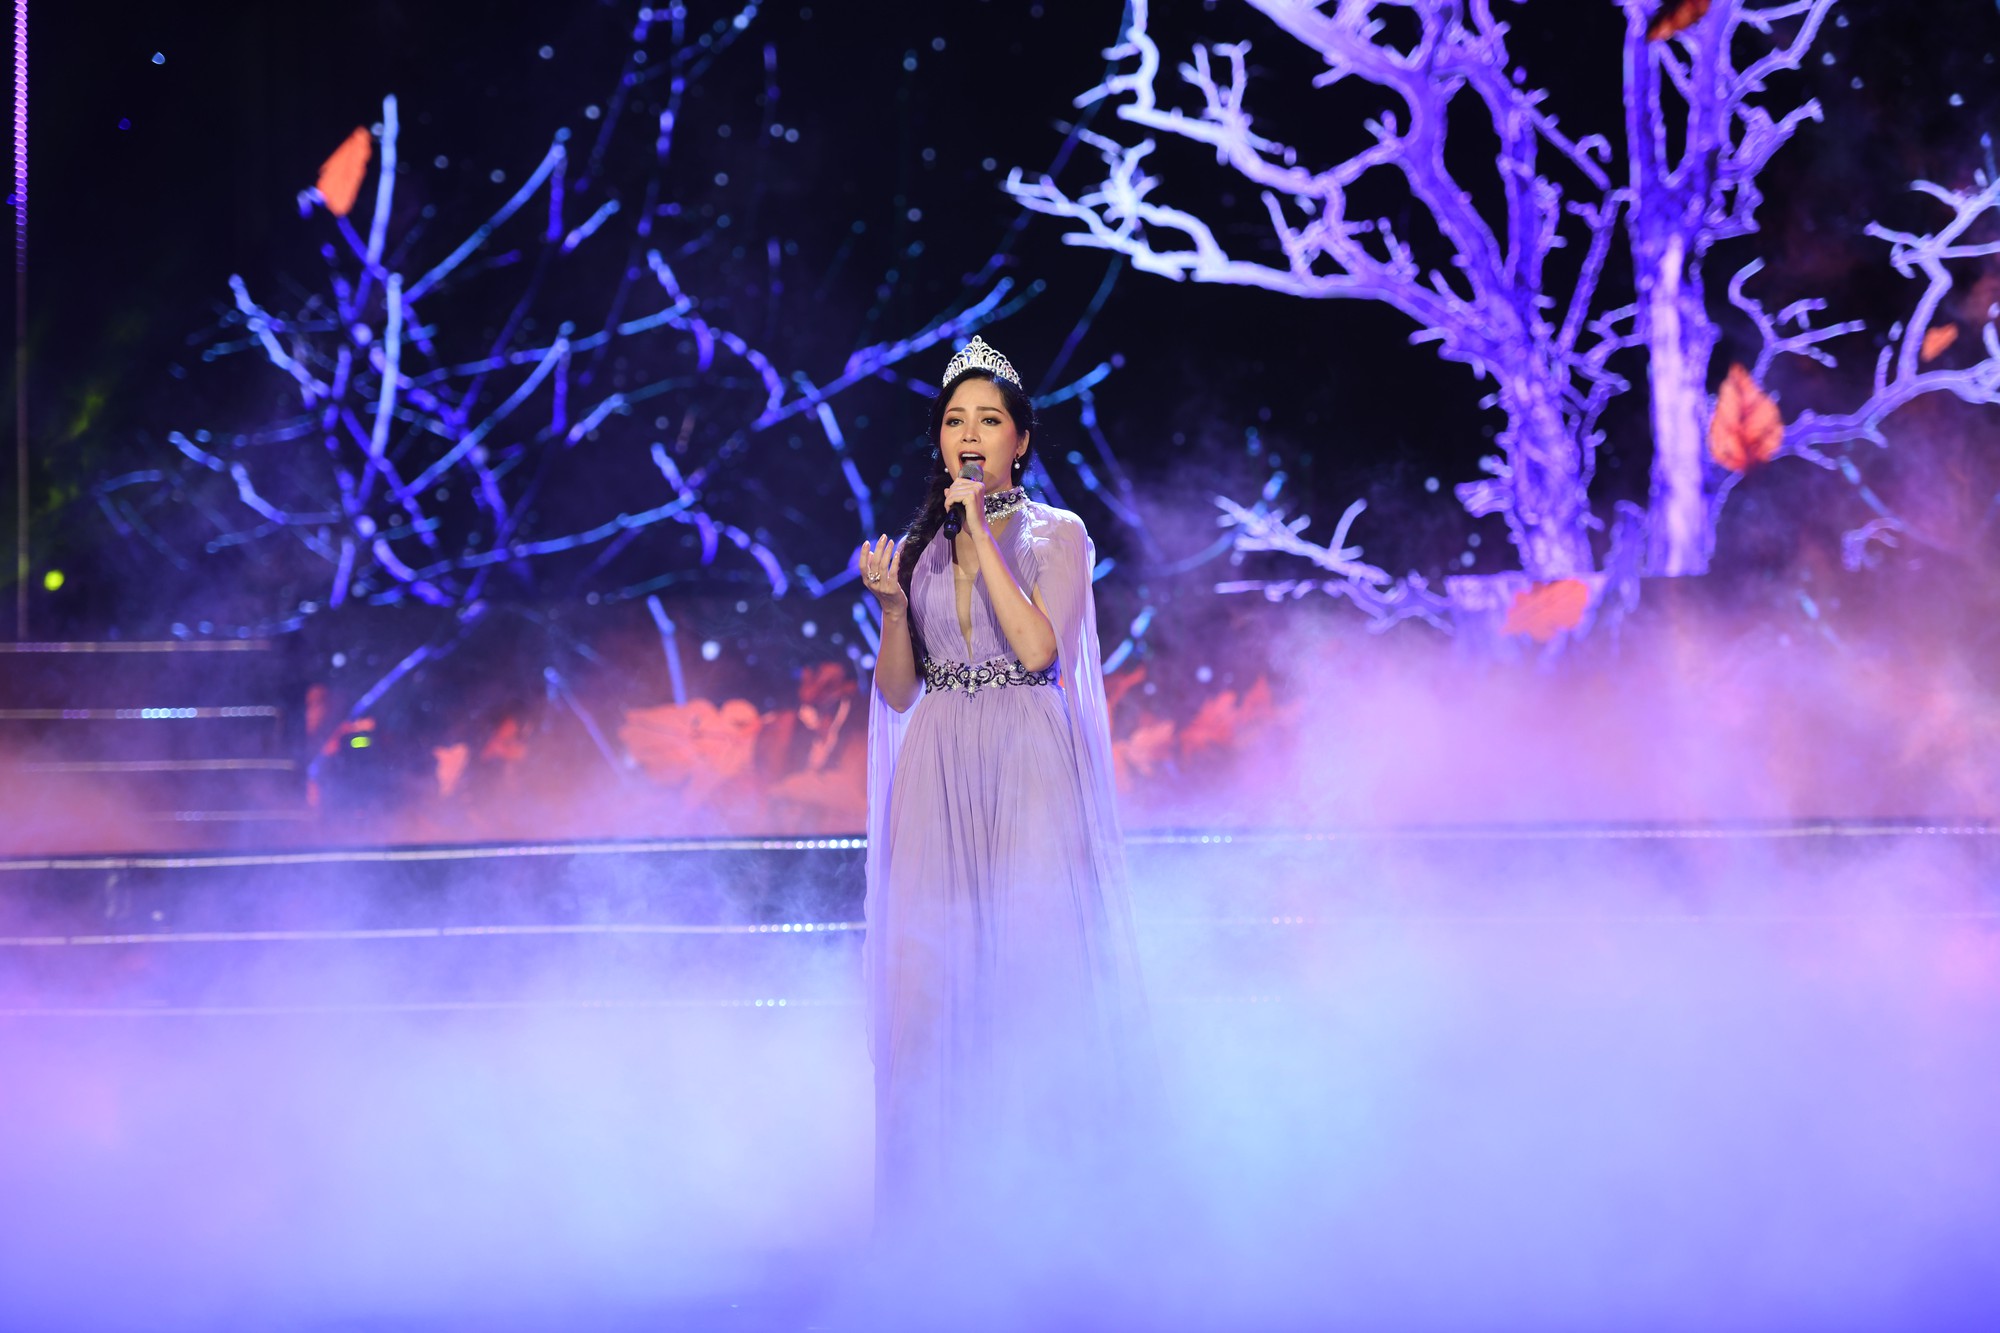 Dàn Hoa hậu đồng loạt hát trong Gala 30 năm HHVN: Đỗ Mỹ Linh nổi bật nhất khi mở màn cực hoành tráng và lộng lẫy như nữ thần - Ảnh 7.